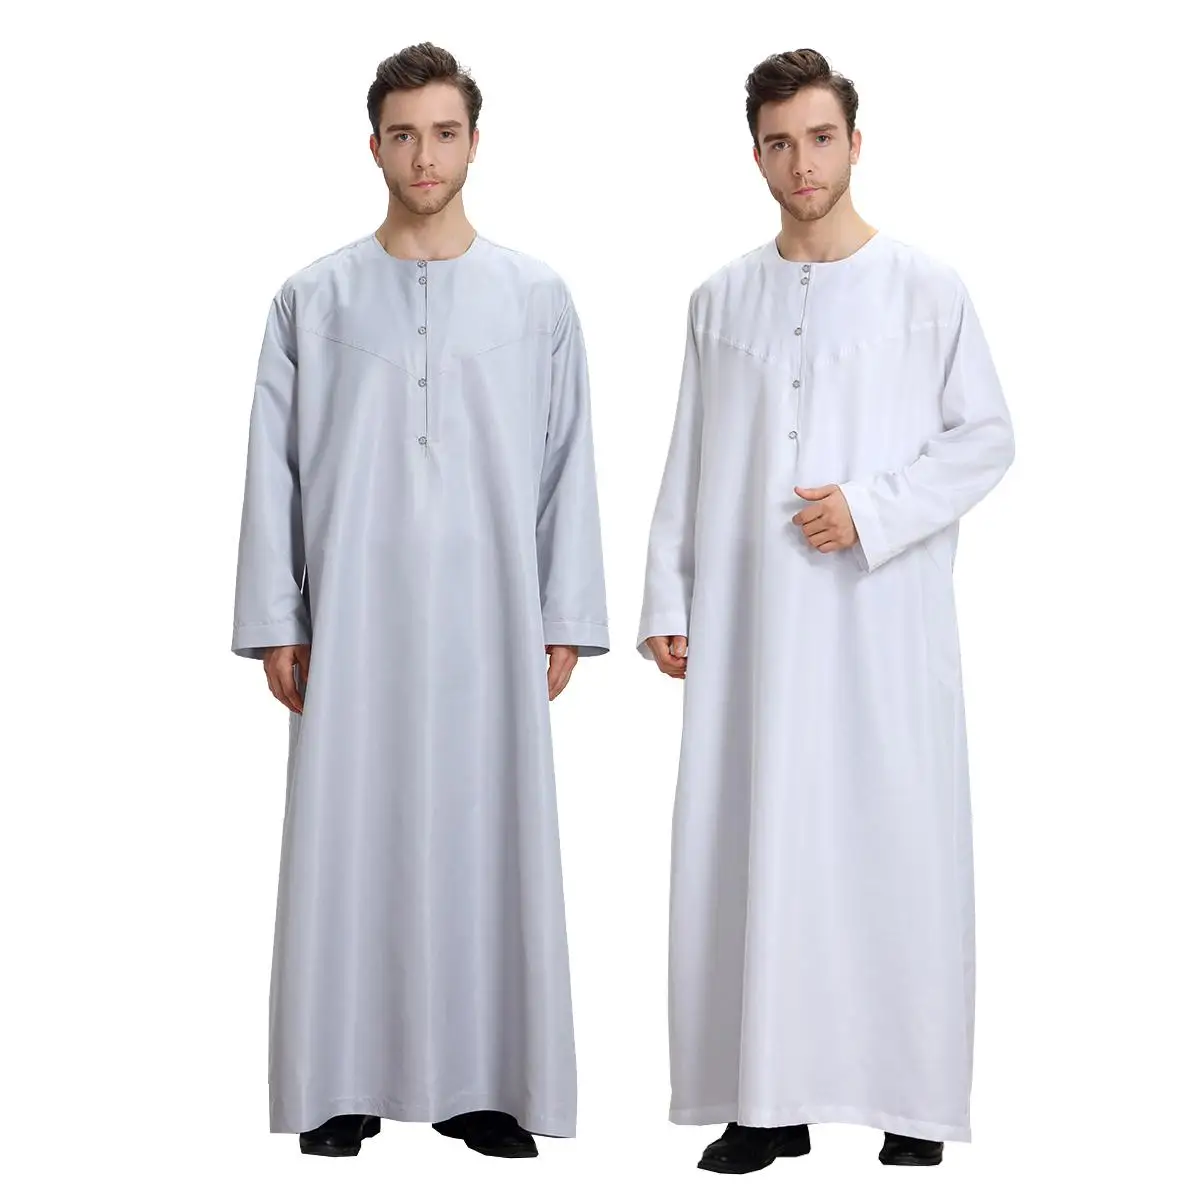 

Eid Muslim Islamic Clothing Men Jubba Thobe Long Robe Saudi Musulman Wear Abaya Caftan Islam Dubai Arab Abaya Ramadan Dress Gown